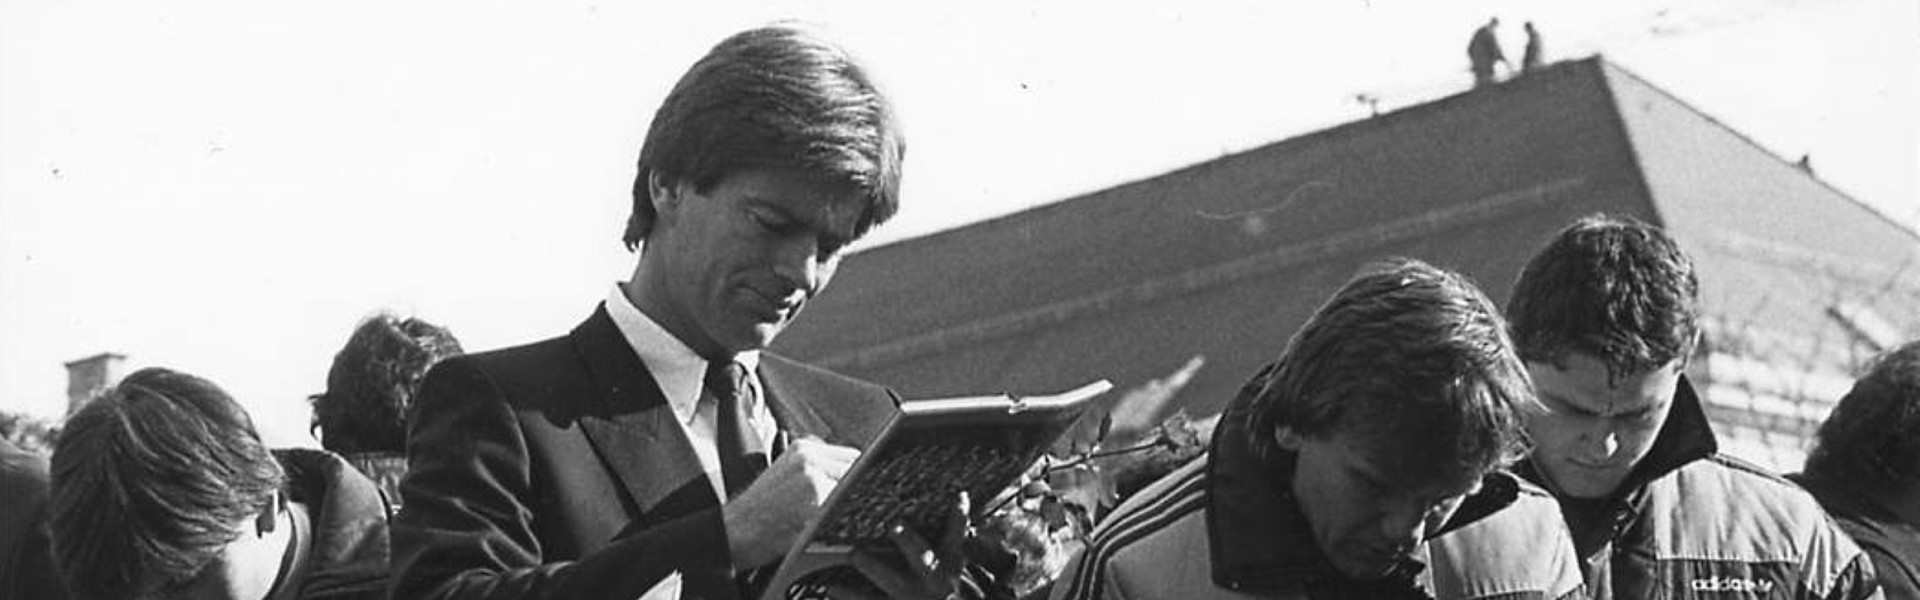 KAC-Trainer William "Bill" Gilligan bei der Meisterfeier 1987 am Neuen Platz